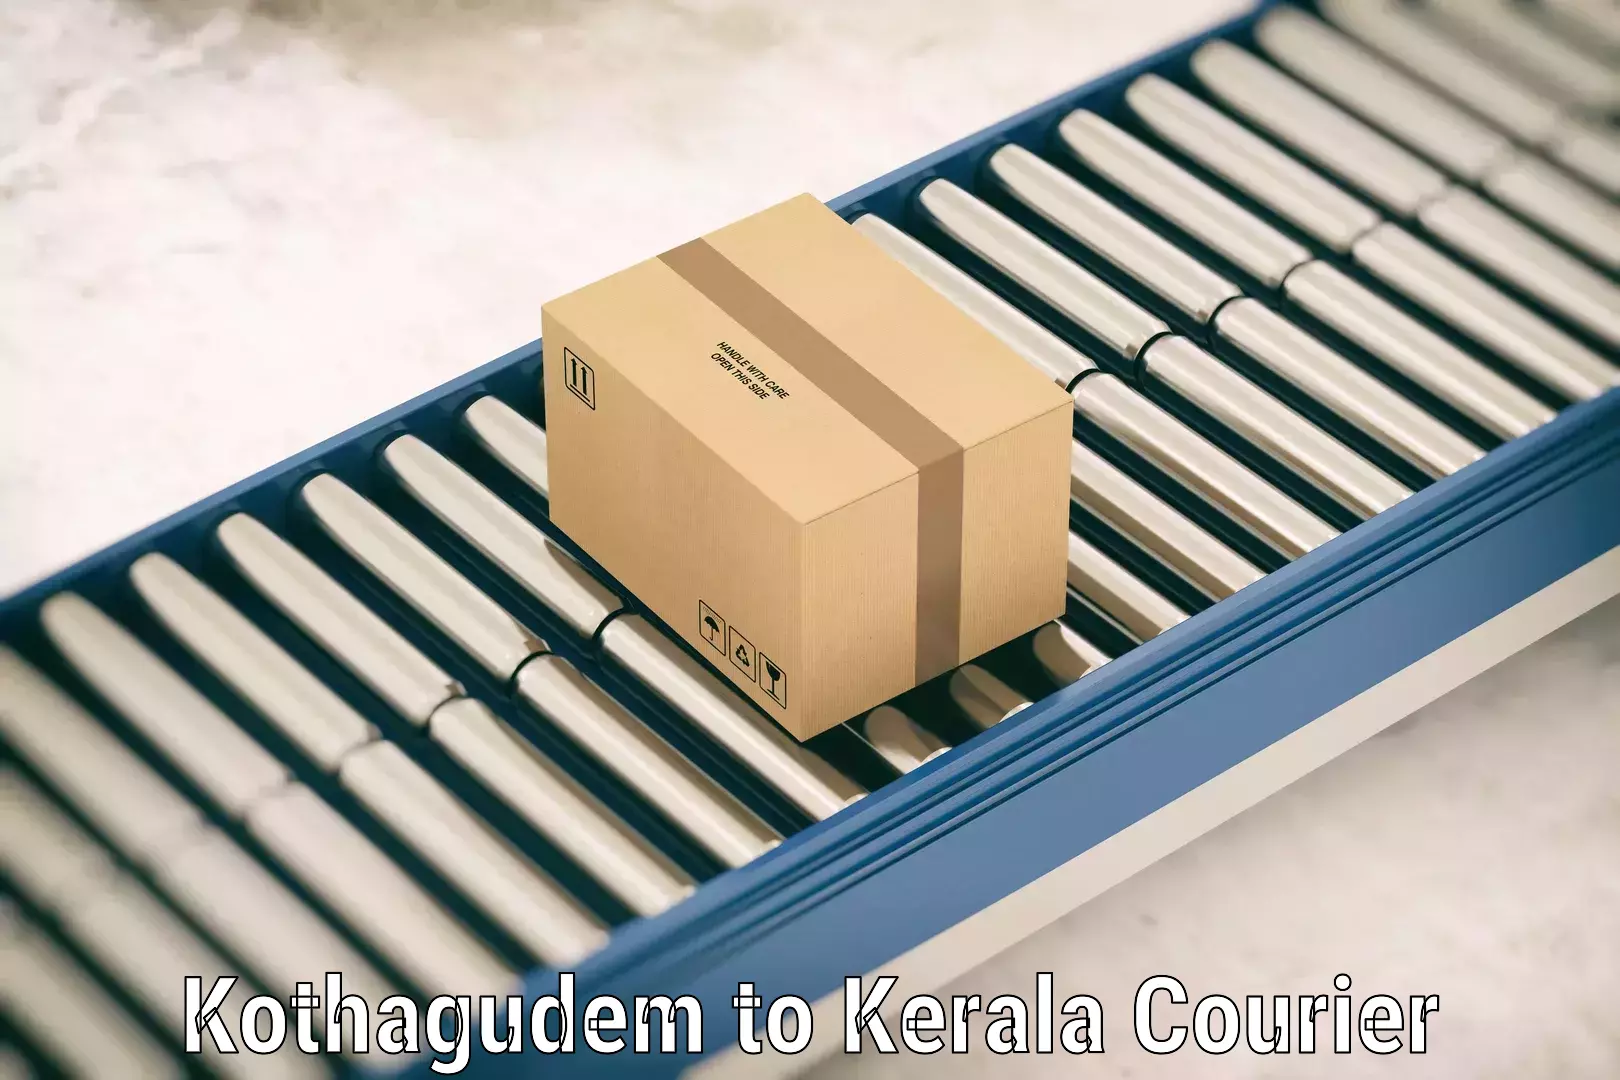 Luggage delivery optimization Kothagudem to Taliparamba